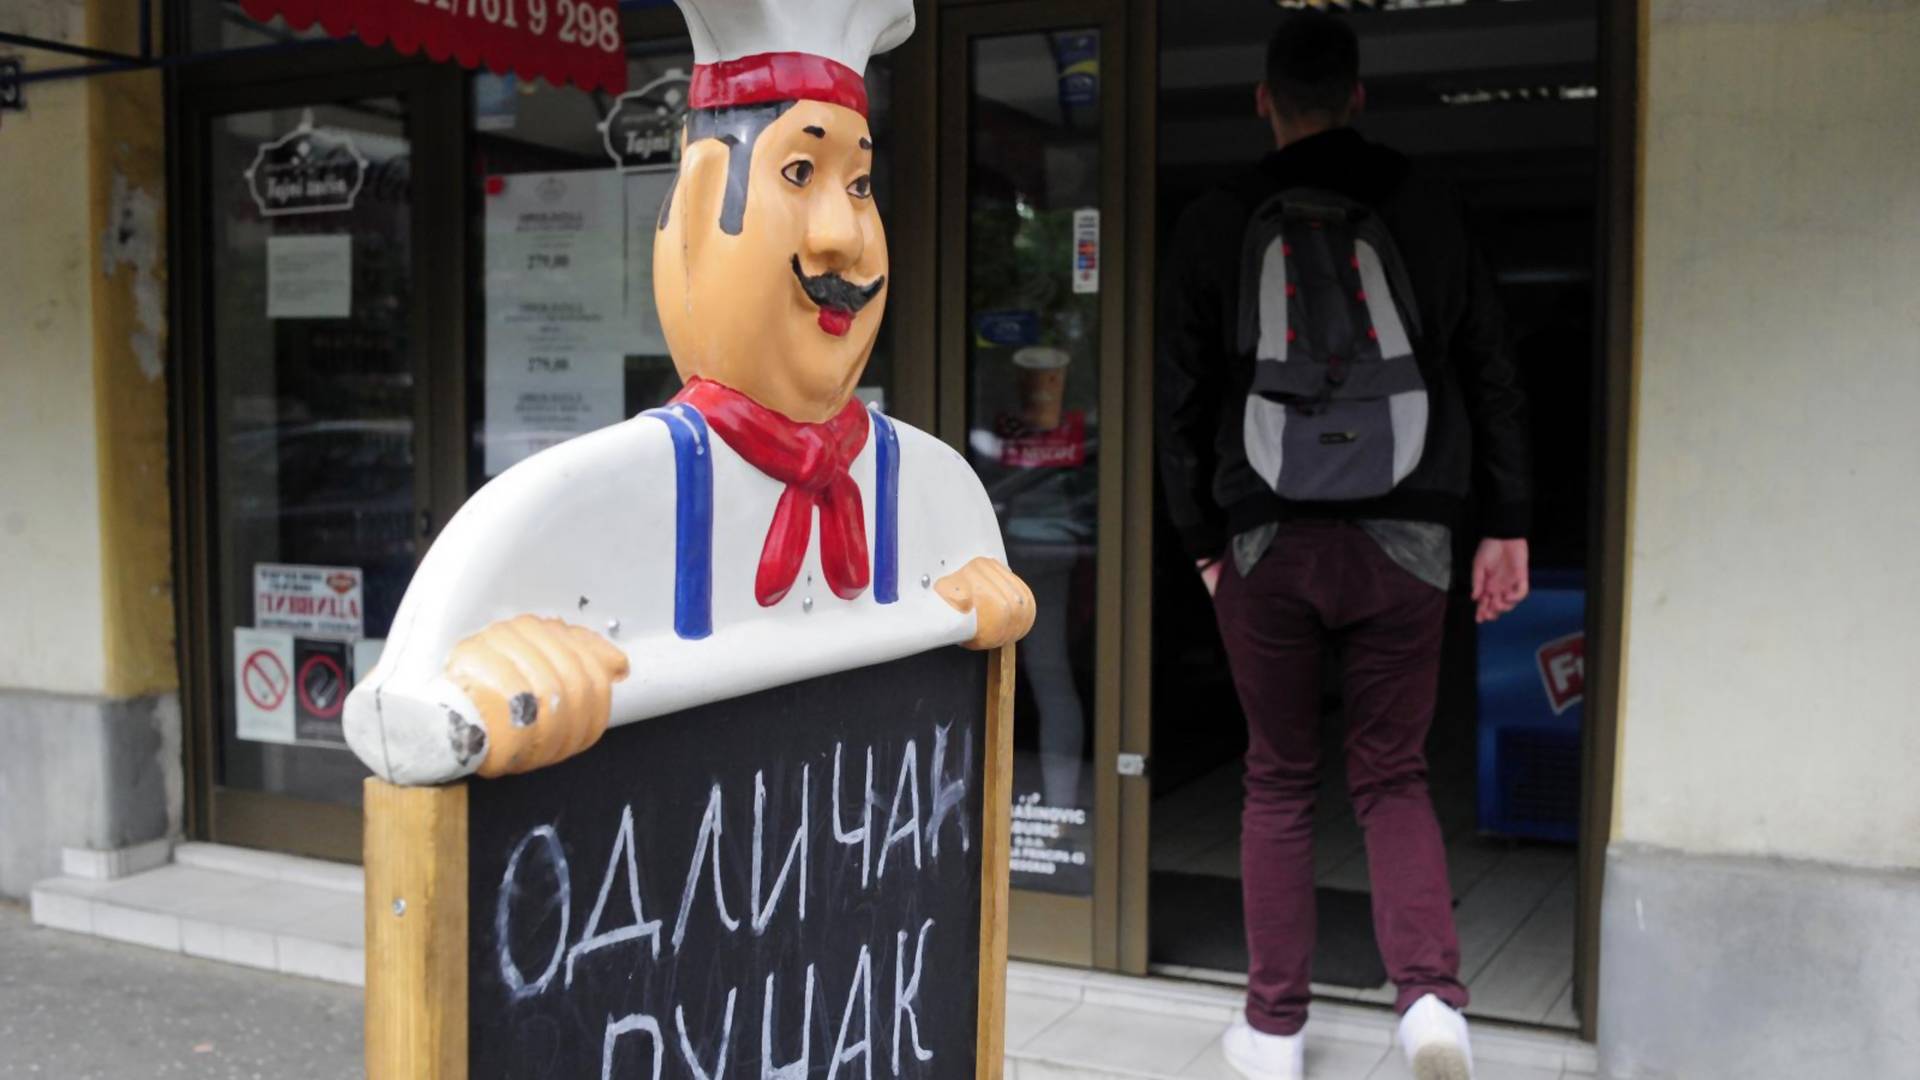 Beogradski restoran nudi besplatne obroke ljudima bez novca i vraća veru u ljude